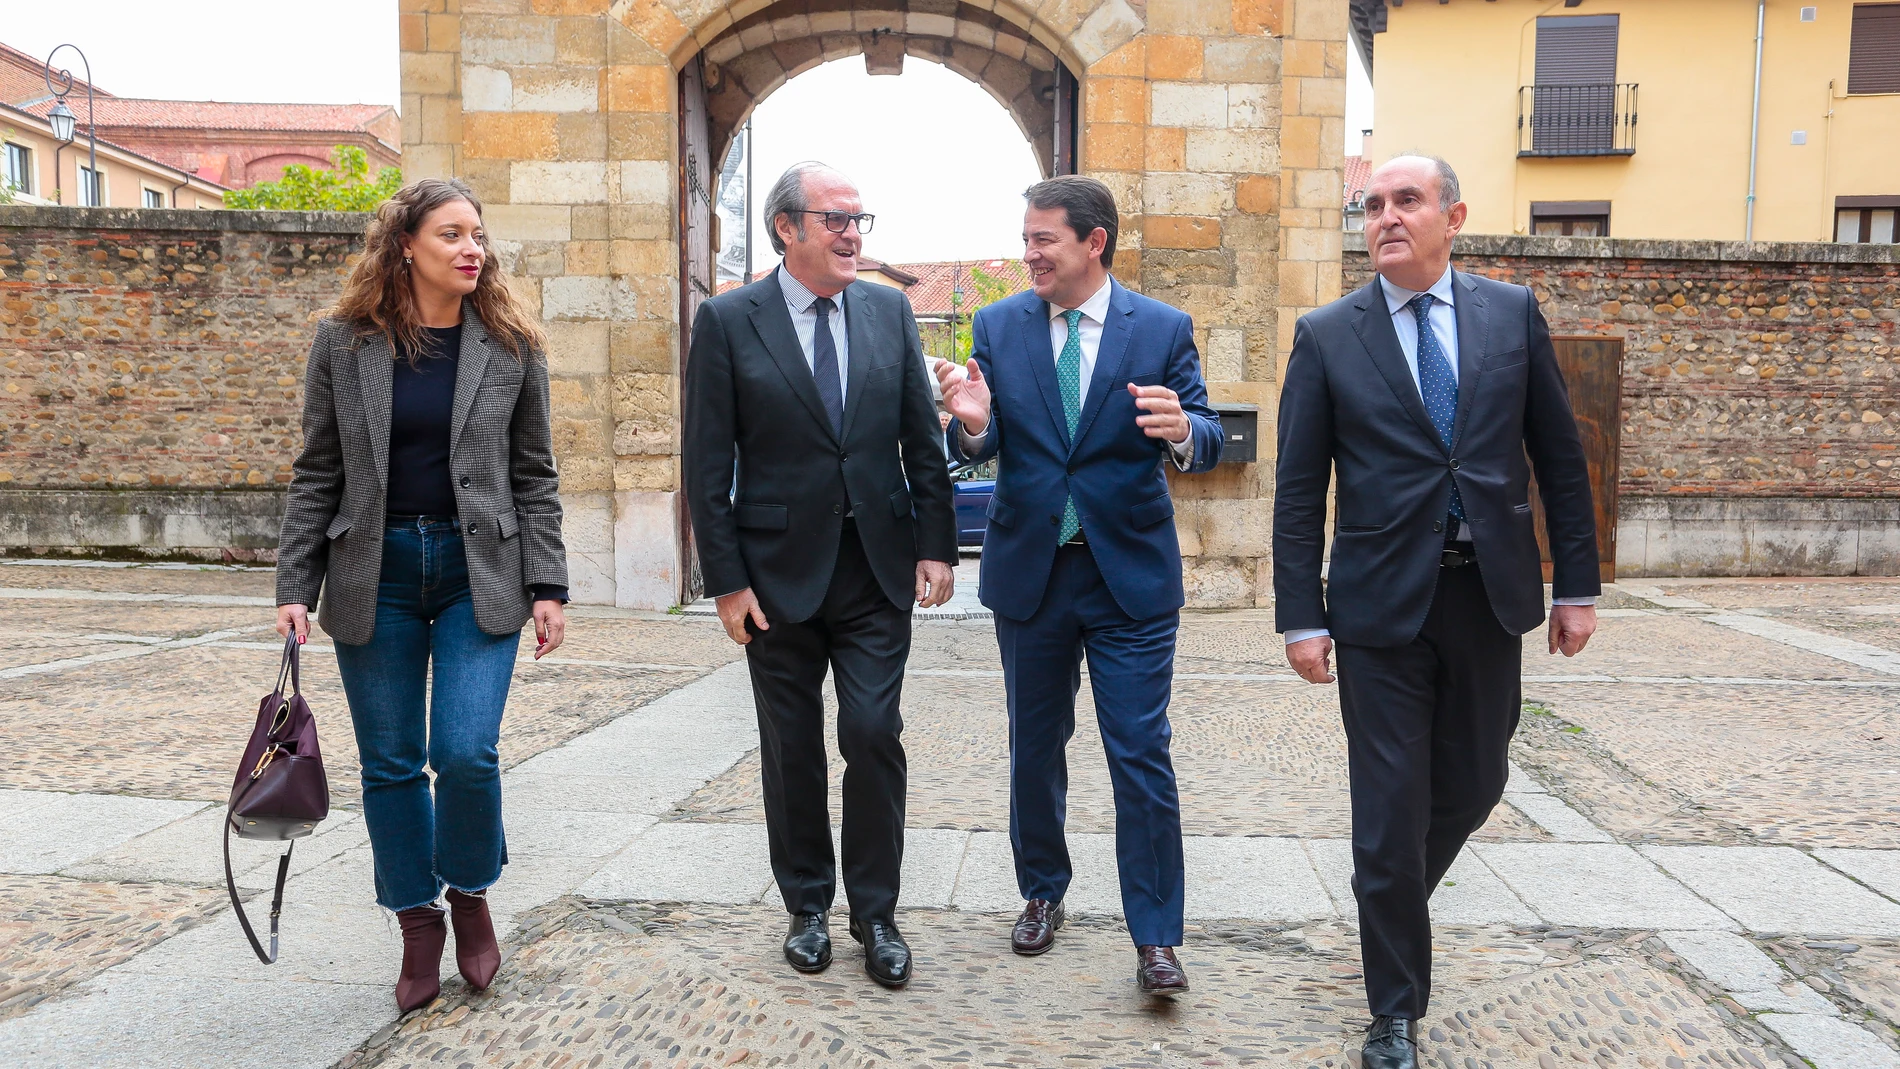 El presidente de la Junta de Castilla y León, Alfonso Fernández Mañueco, conversa con Ángel Gabilondo, en presencia de Tomás Quintana y Ester Muñoz